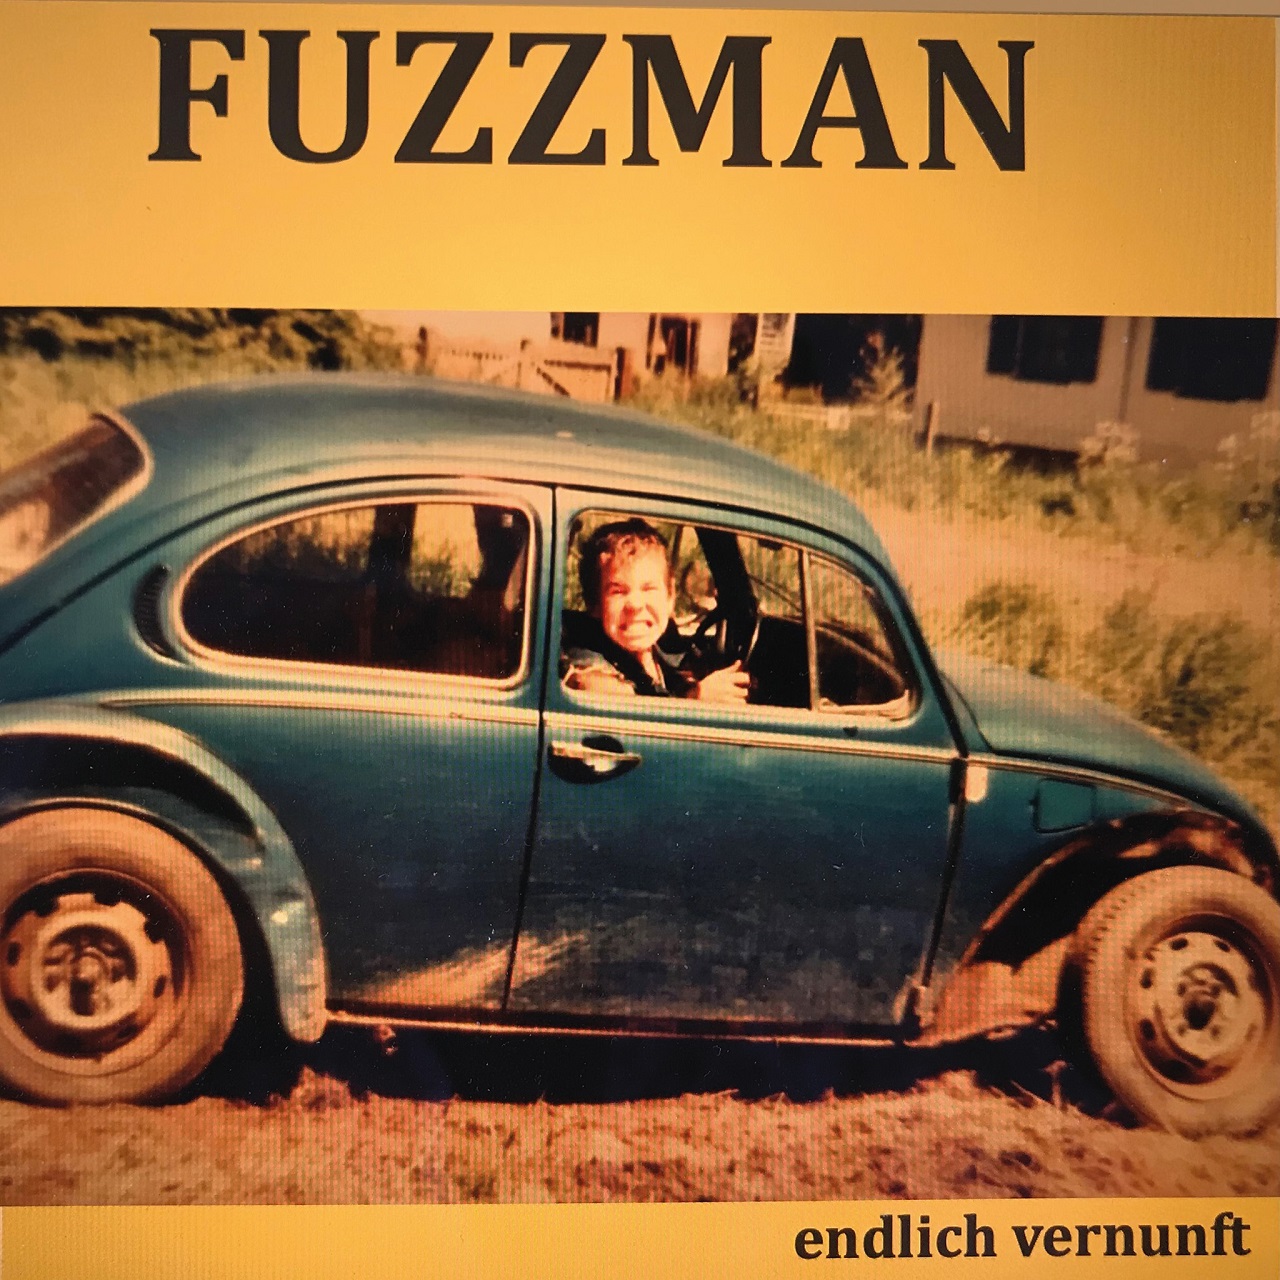 Albumcover "Endlich Vernunft" Fuzzman